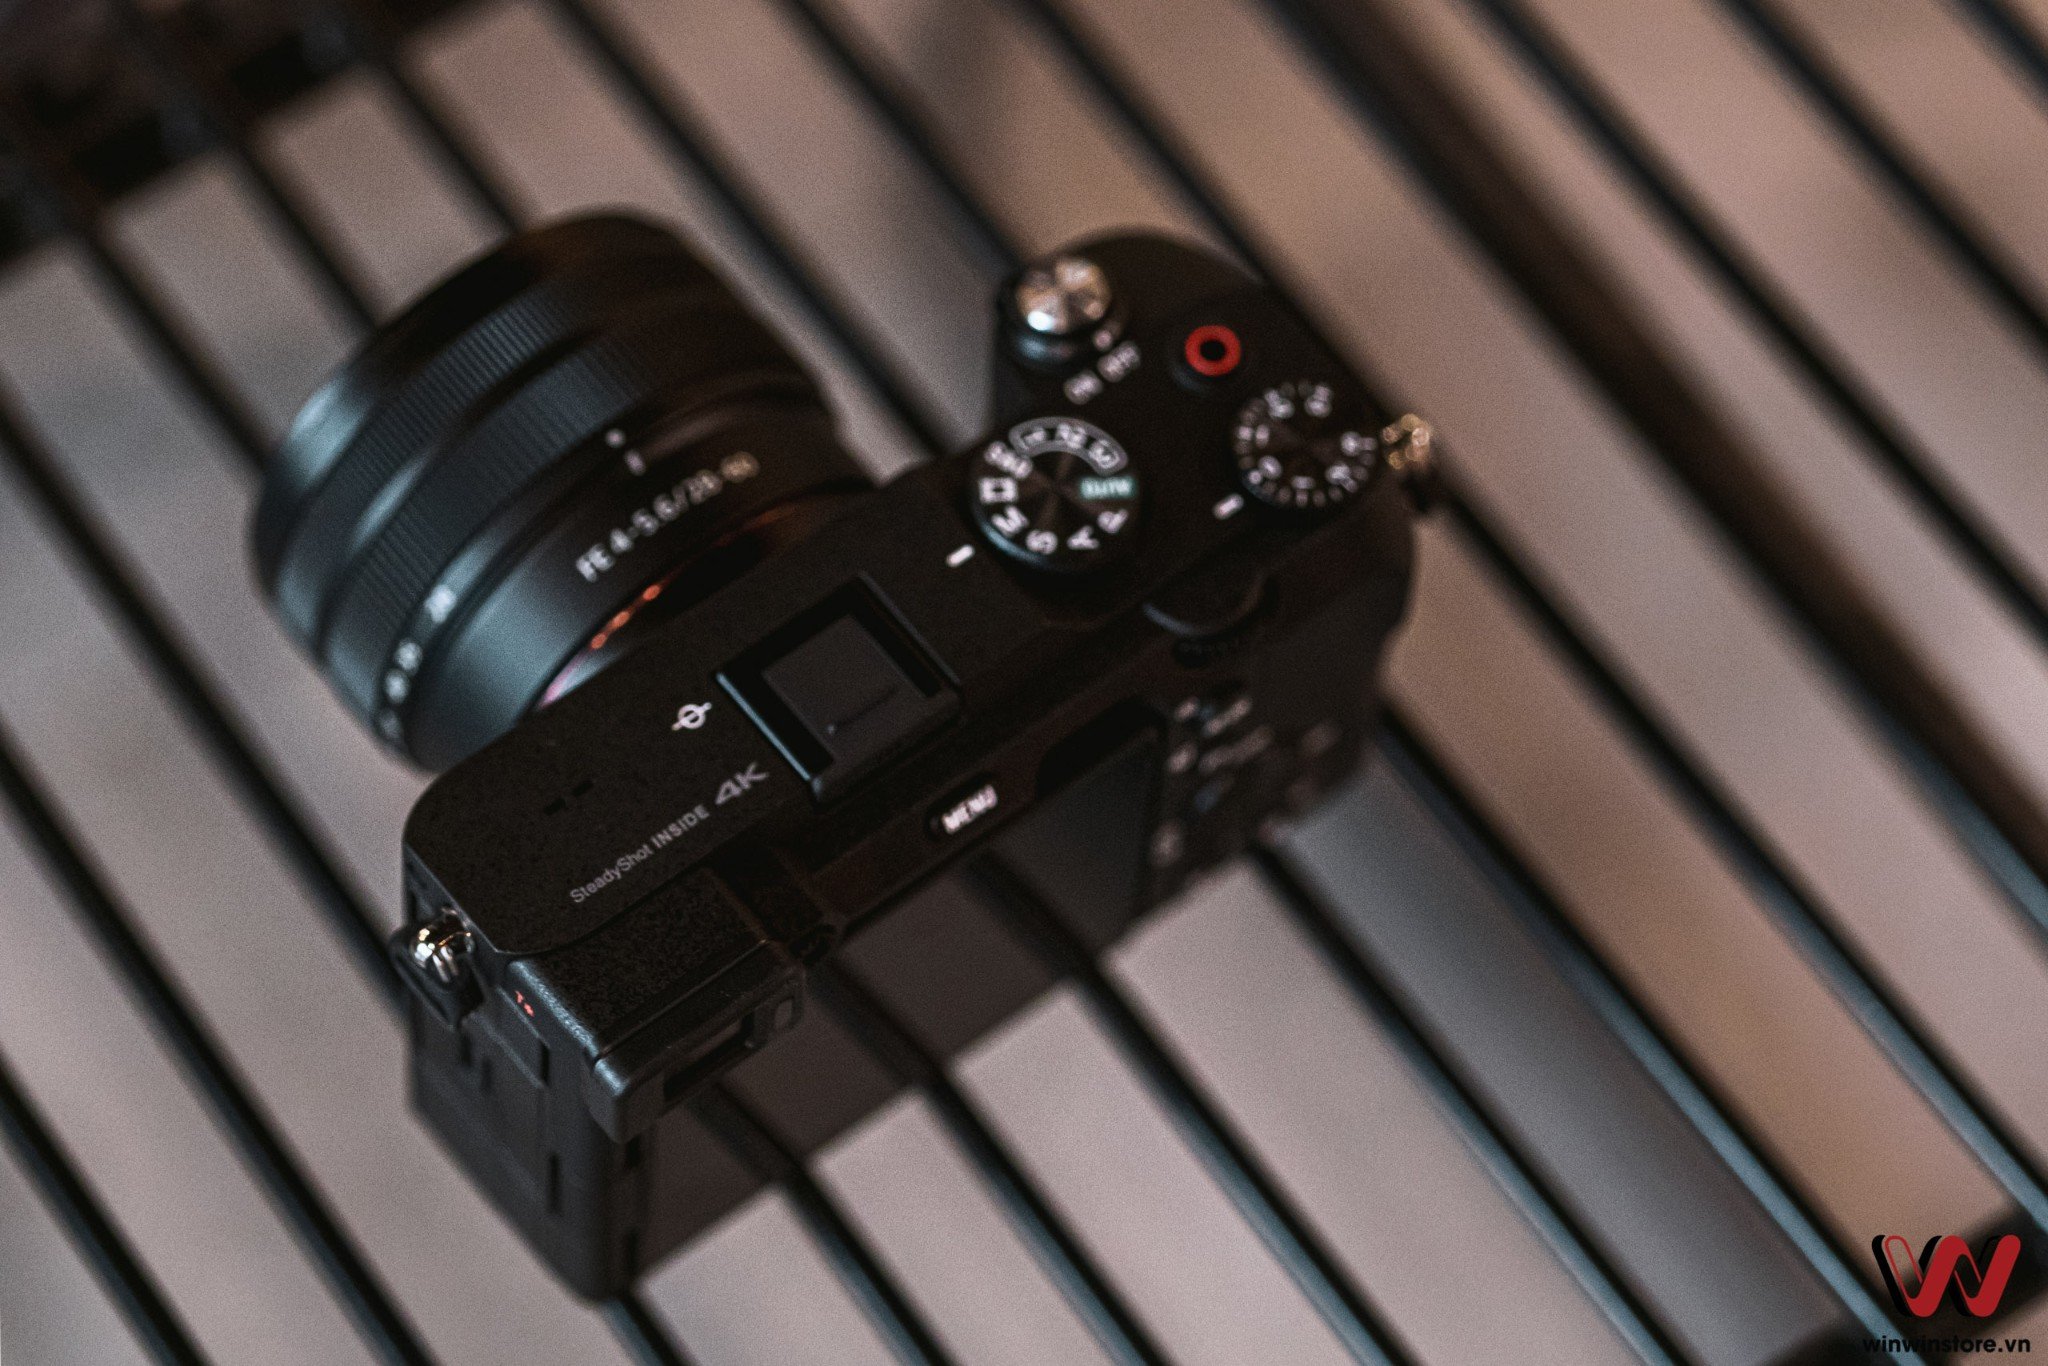 Máy ảnh Sony Alpha A7C với ống kính FE 28-60mm (Black)